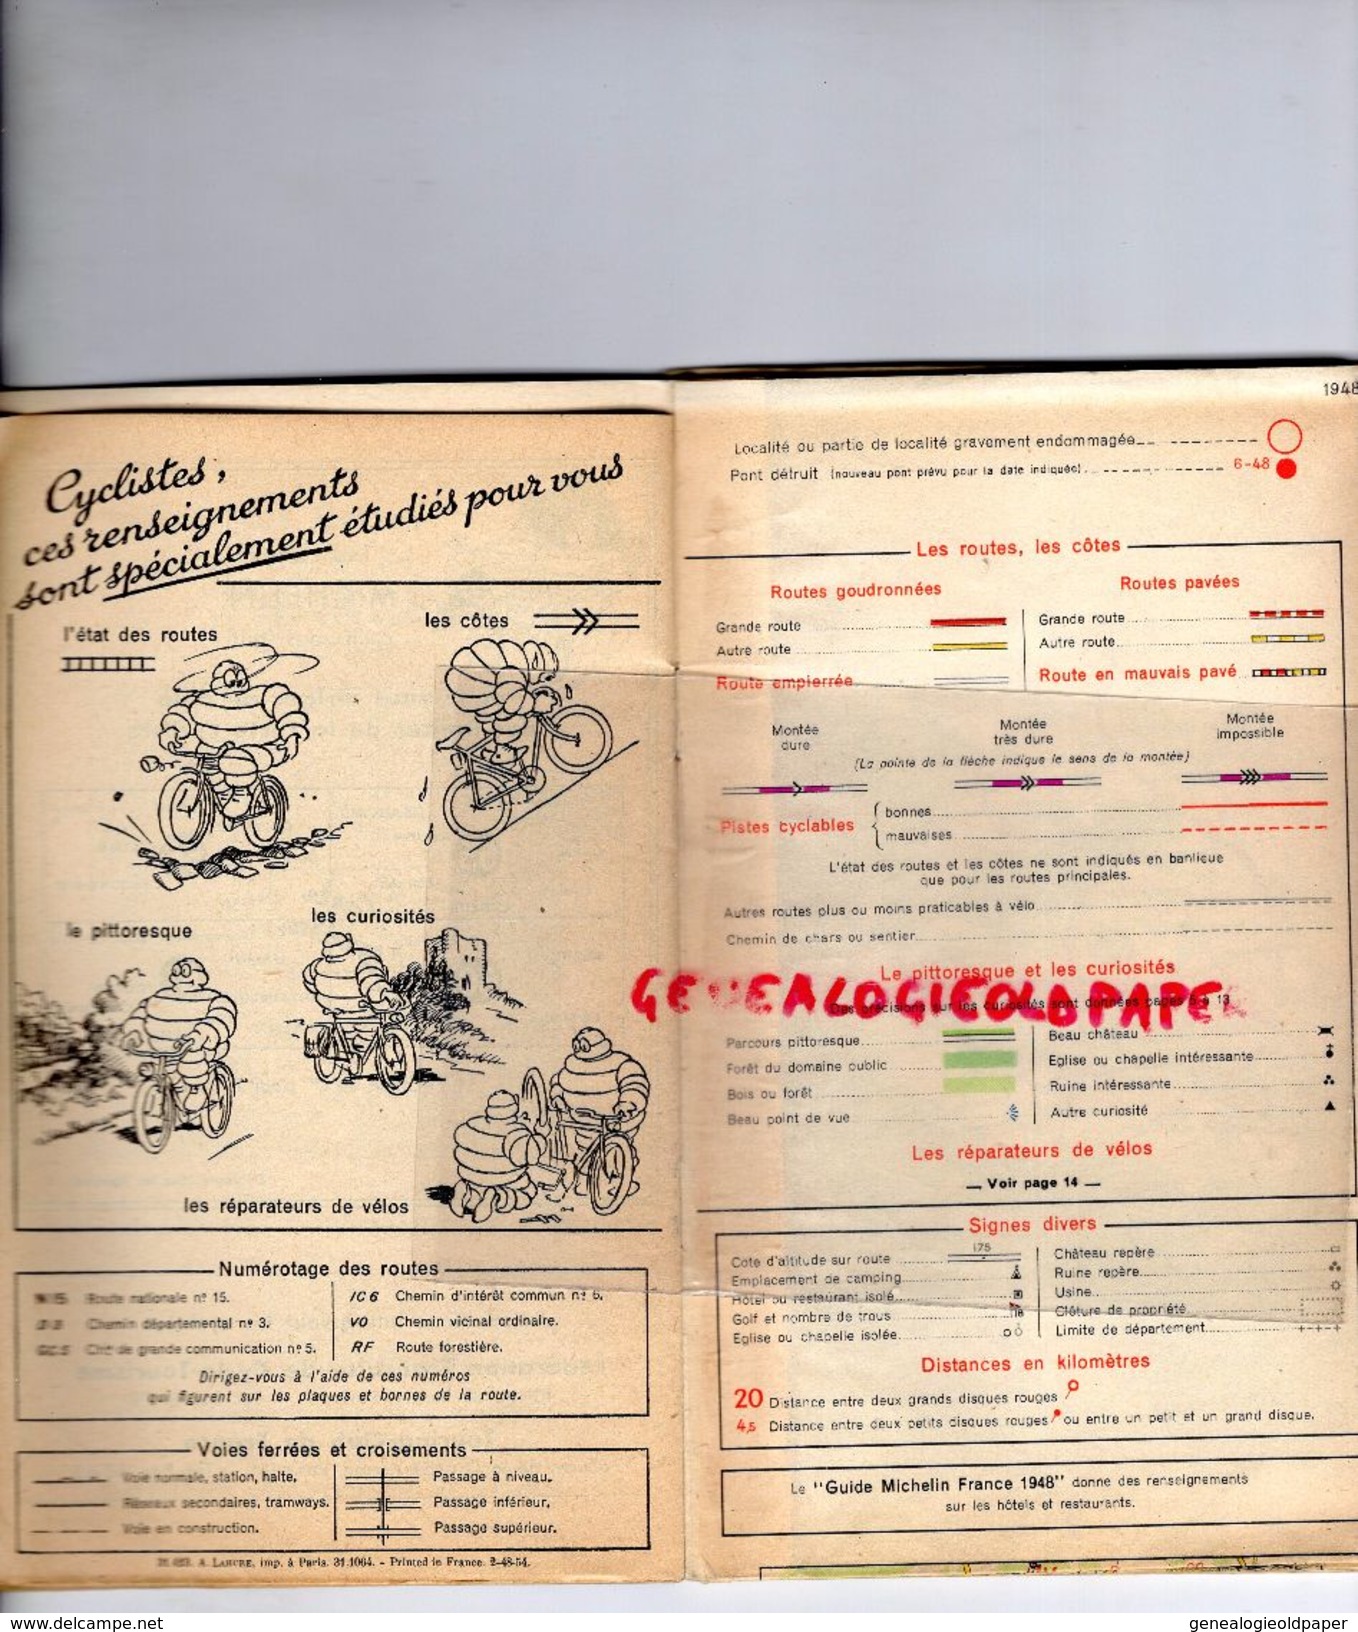 75 - PARIS -CARTE CYCLISTE -CYCLISME- MICHELIN -RARE 1948-MNTES-MEULAN-PONTOISE-GONESSE-MEAUX-SENLIS-LUZARCHES-ISLE ADAM - Cartes Routières